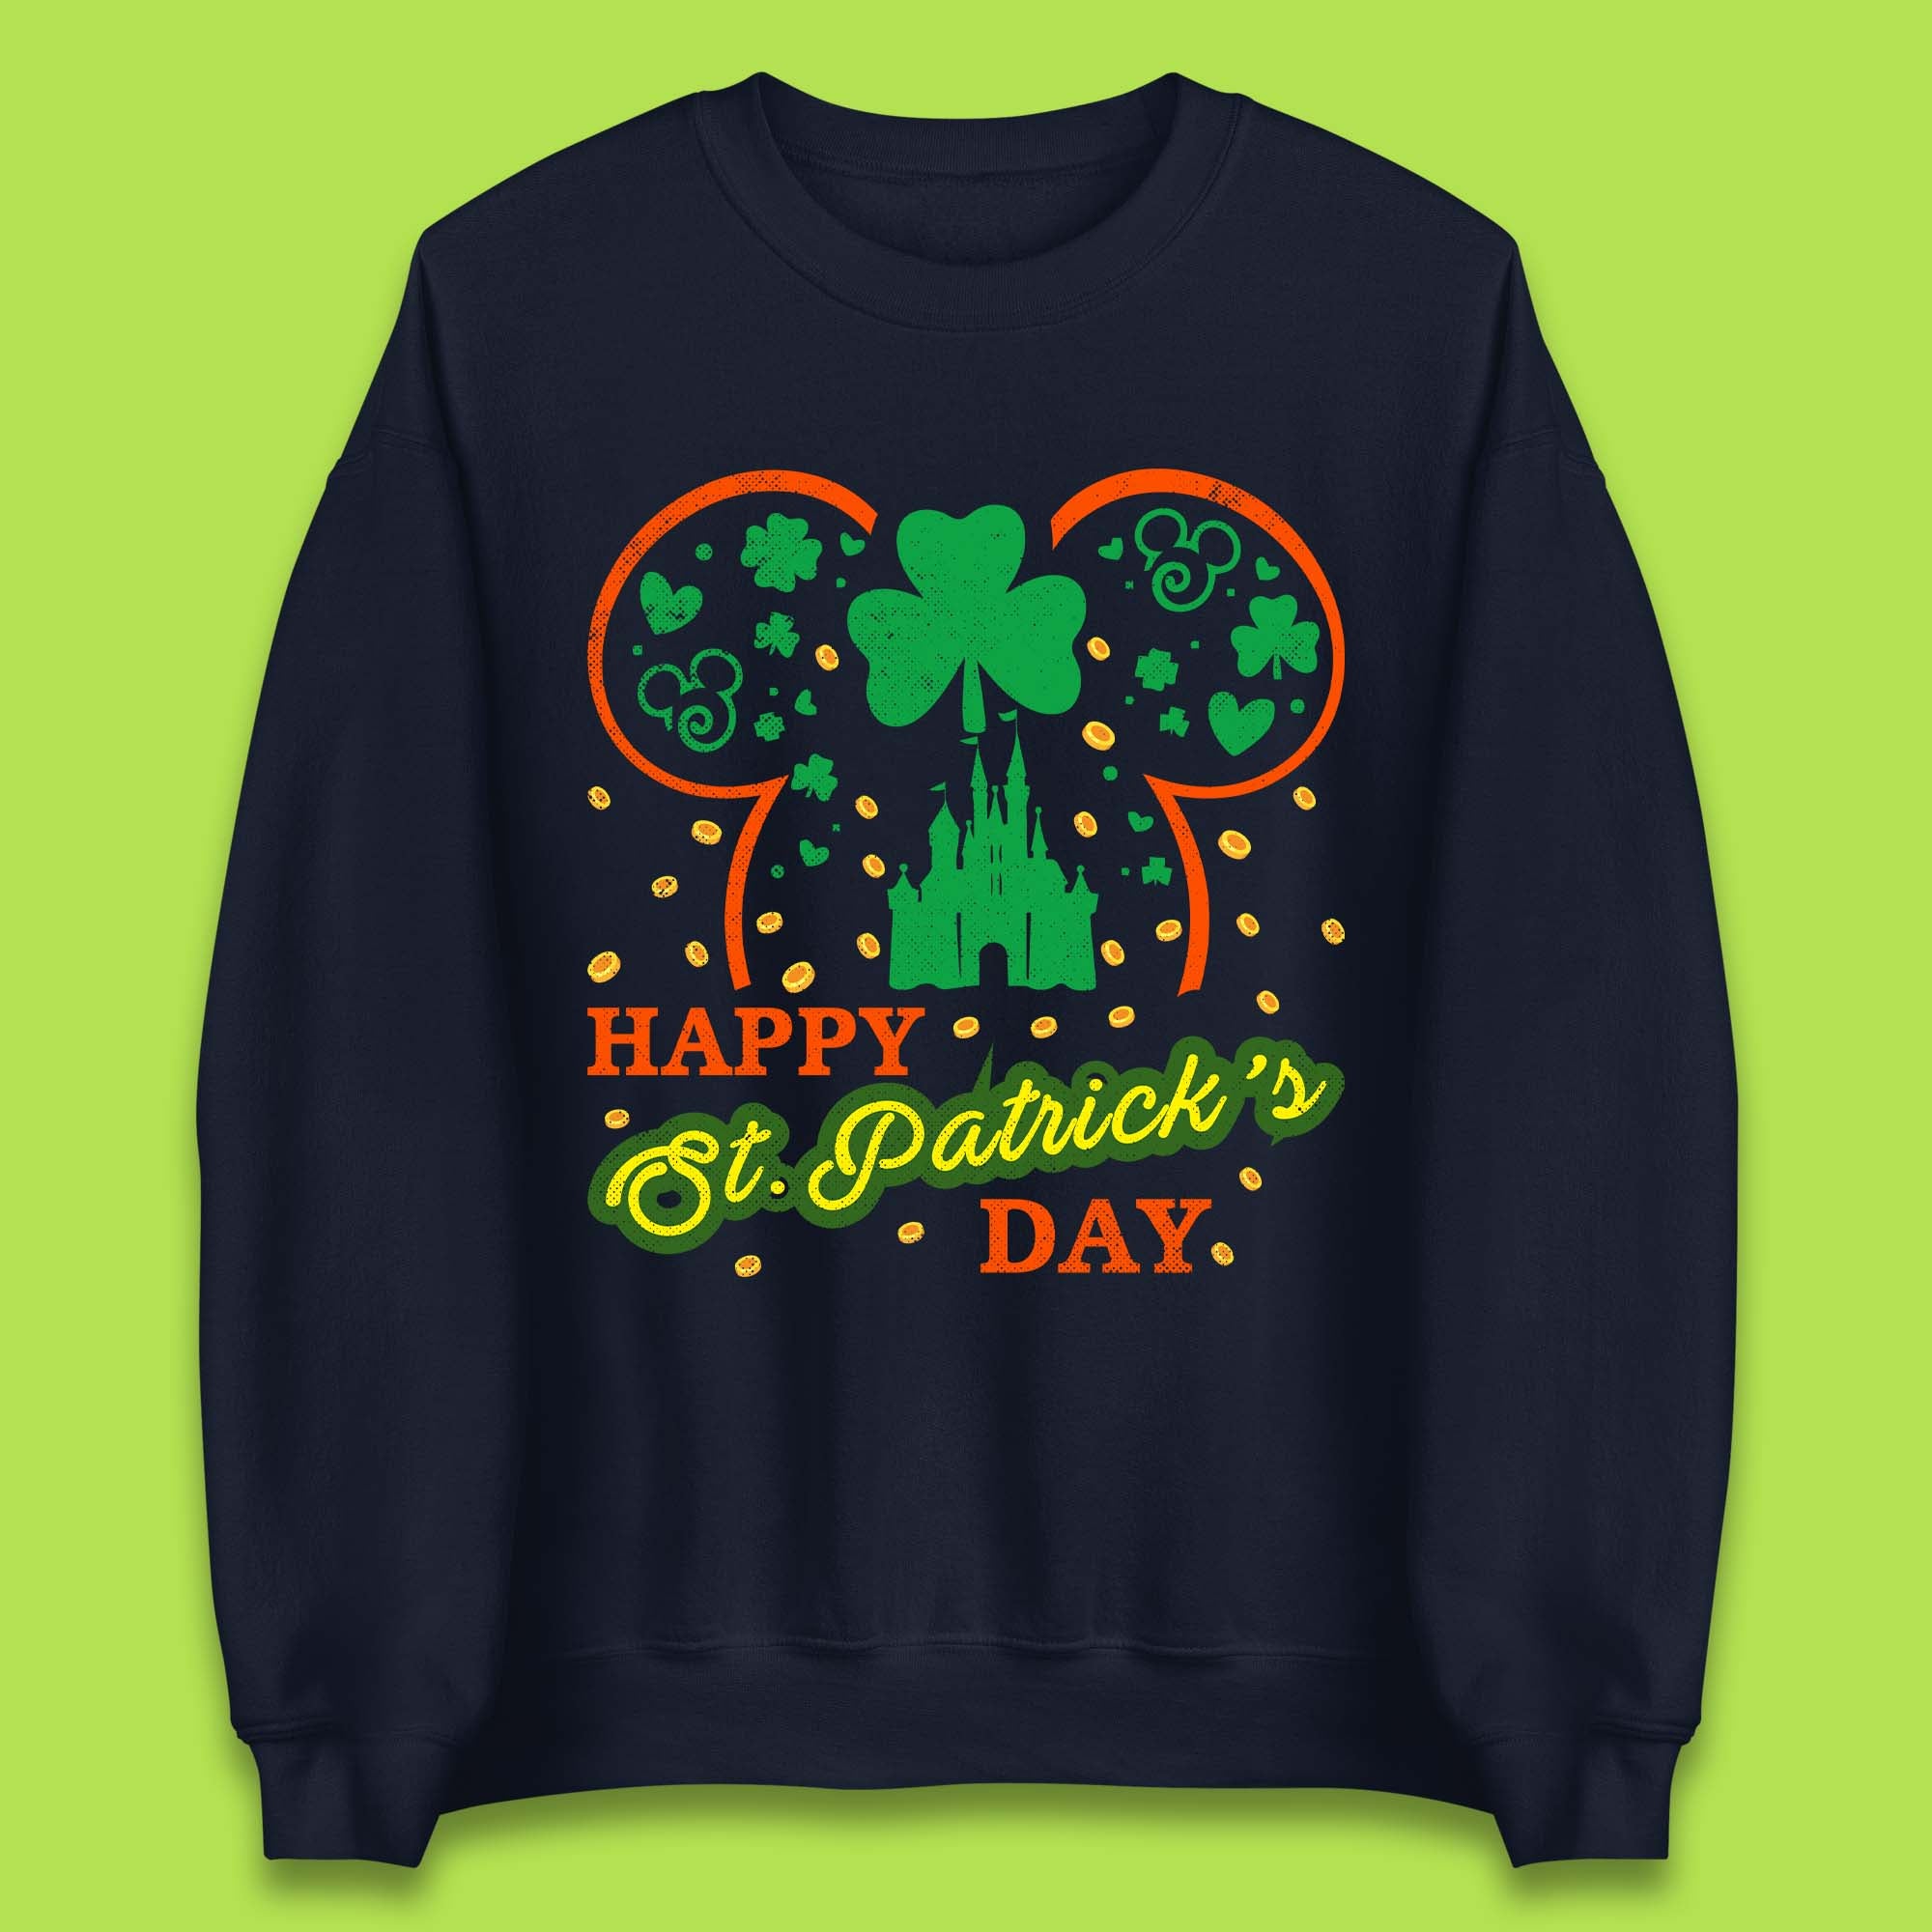 Disney Happy St. Patrick's Day Unisex Sweatshirt